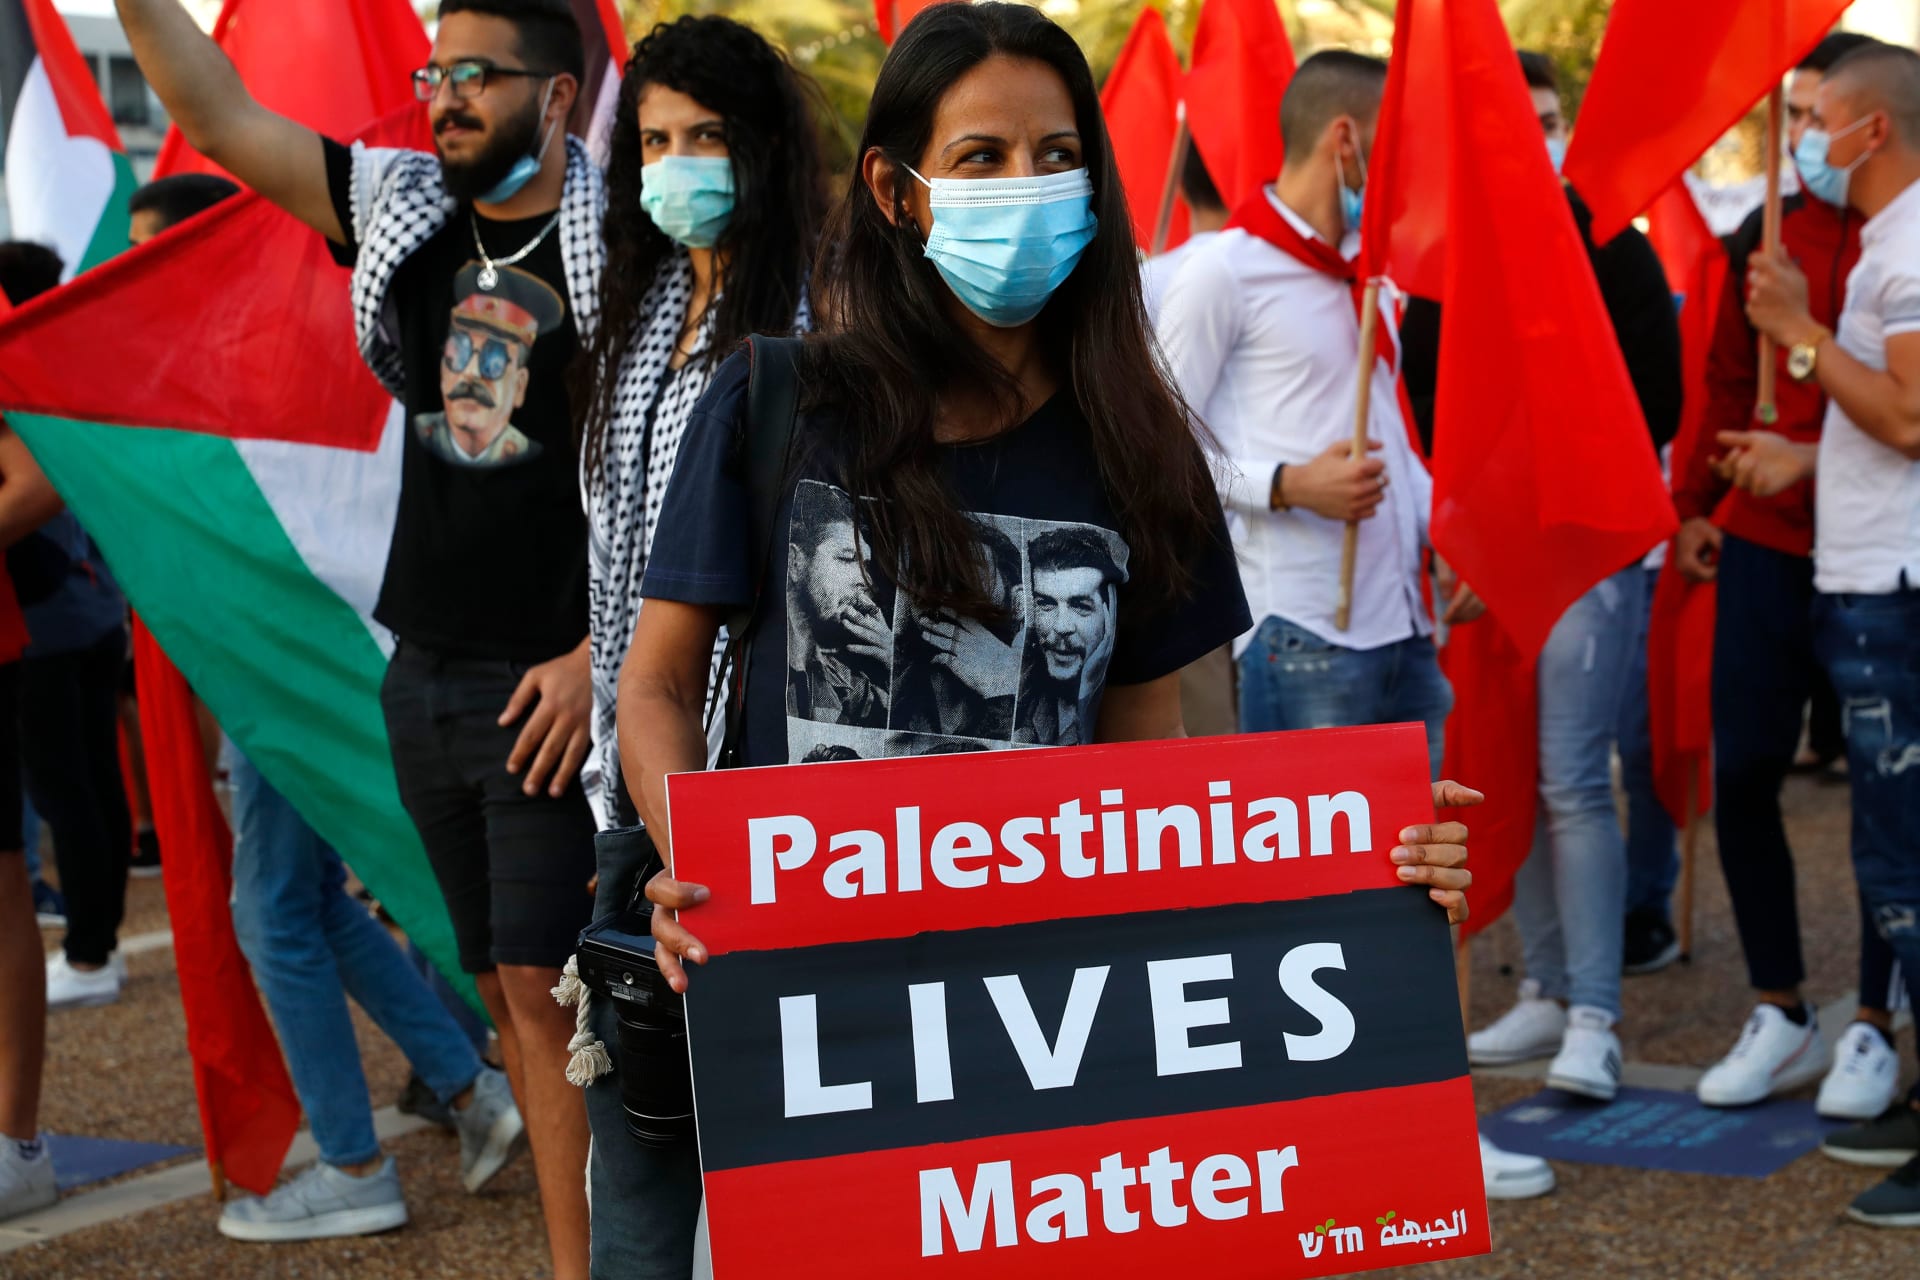 مظاهرات في تل أبيب لرفض ضم الضفة الغربية.. وزعيم ميرتس: جريمة حرب ستكلفنا الدم